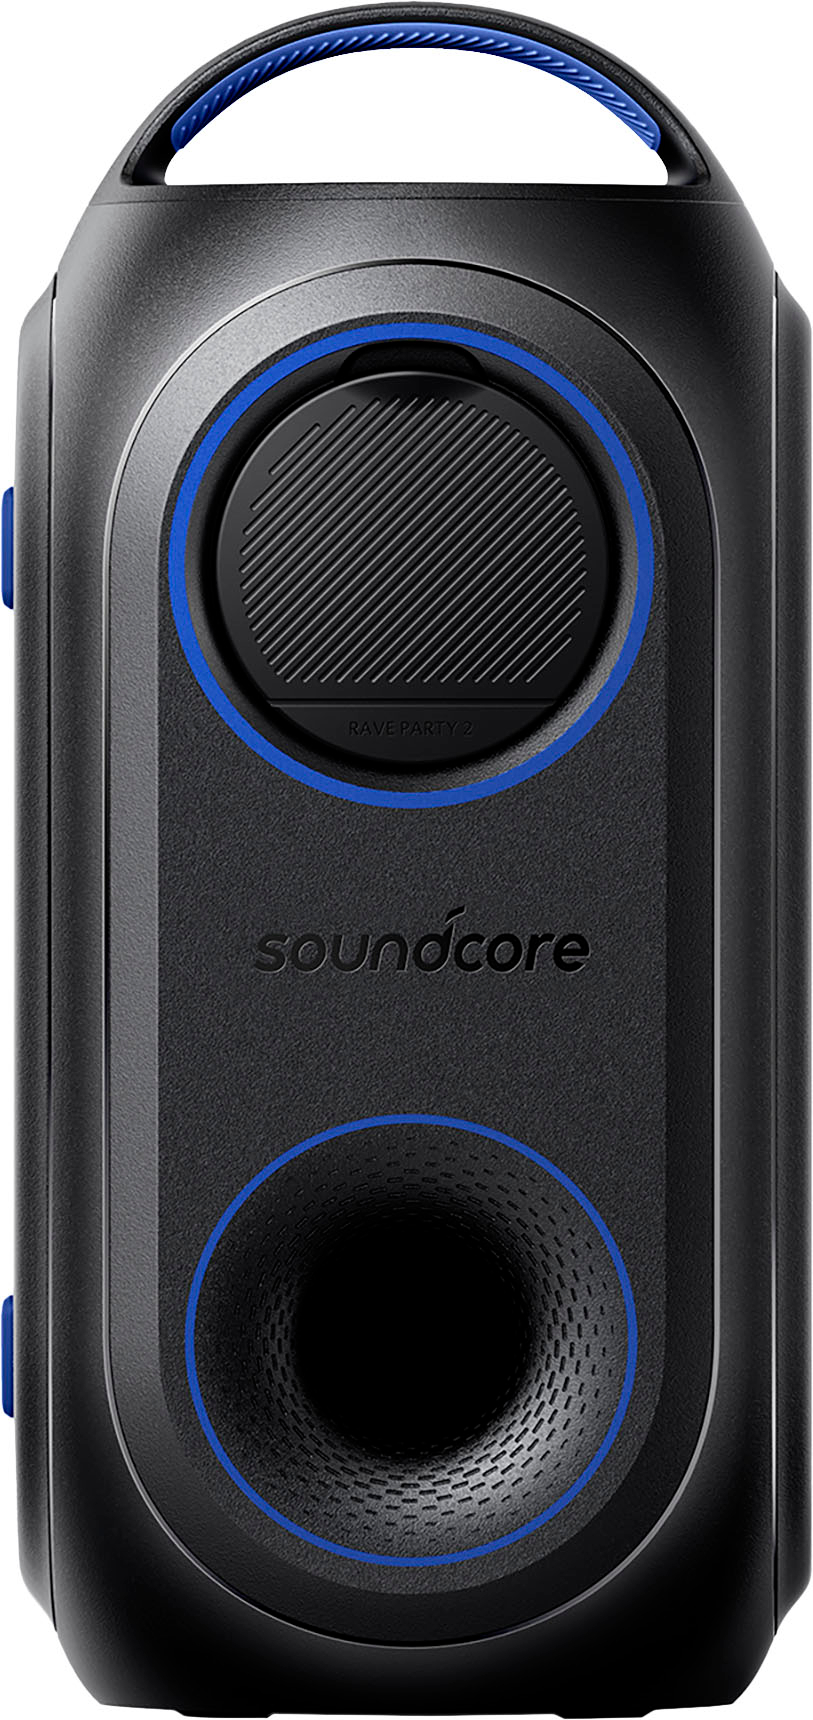 Anker Soundcore Rave Party SE Speaker - Black (A3390J125) for sale online